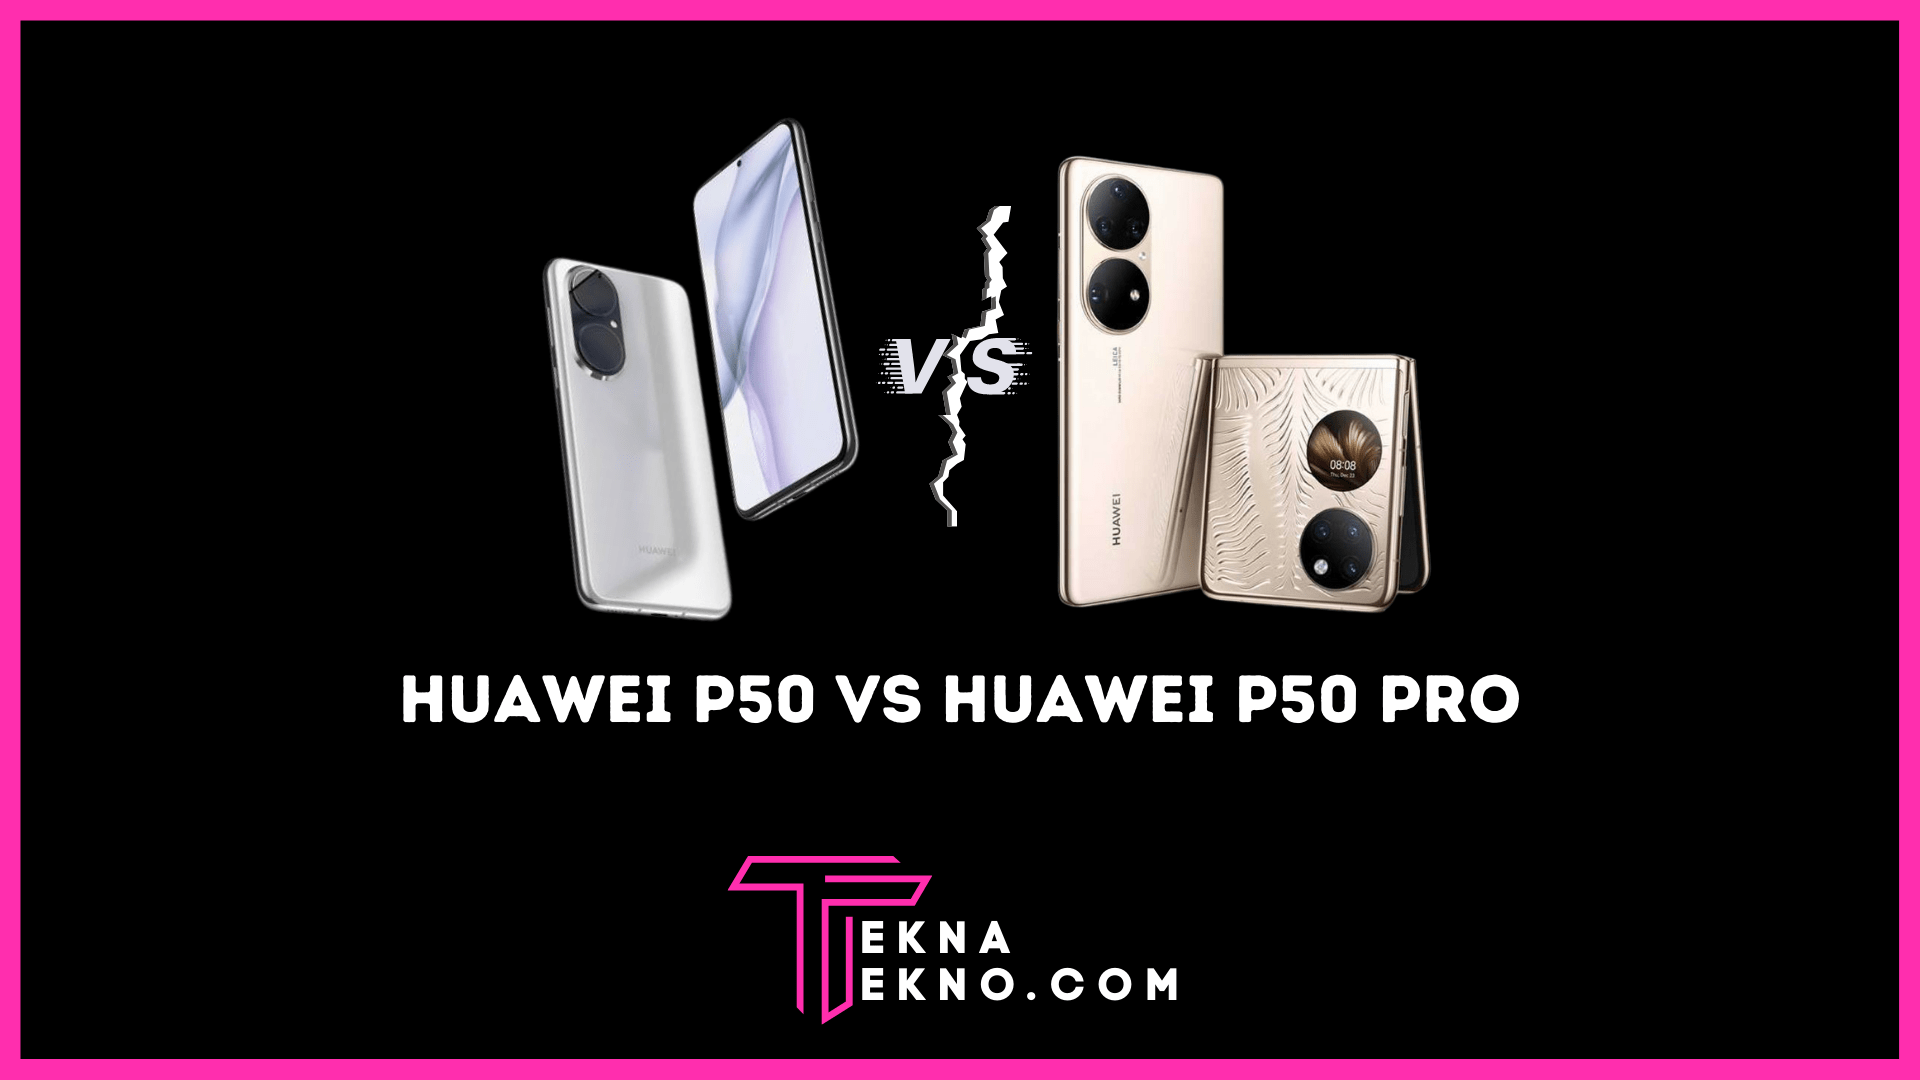 Ini Dia Perbedaan Spesifikasi Huawei P50 dan Huawei P50 Pro